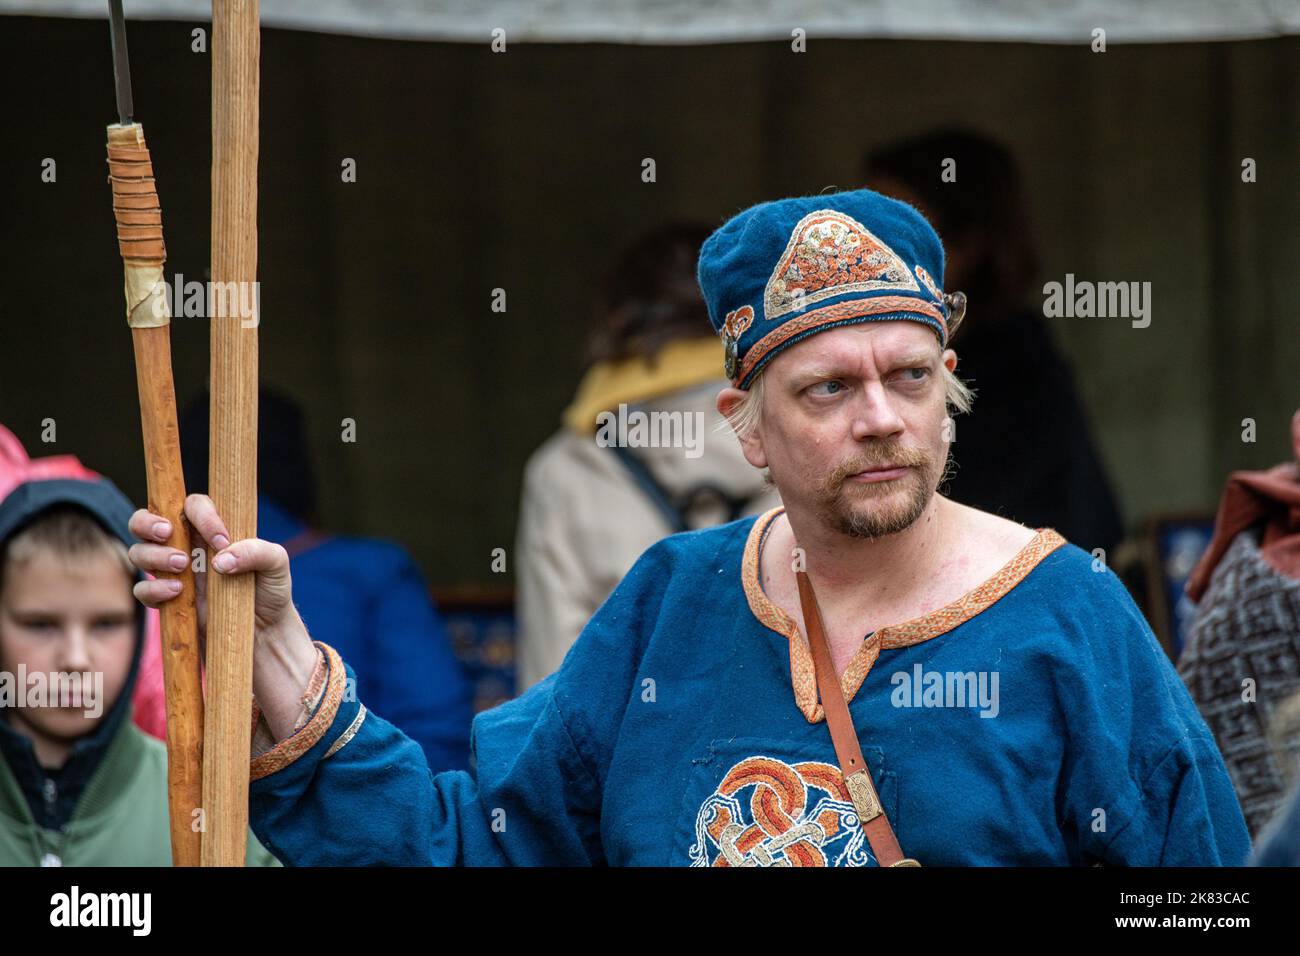 Male reenactor at Pukkisaari Iron Age Market reenactment in Vähä-Meilahti district of Helsinki, Finland Stock Photo